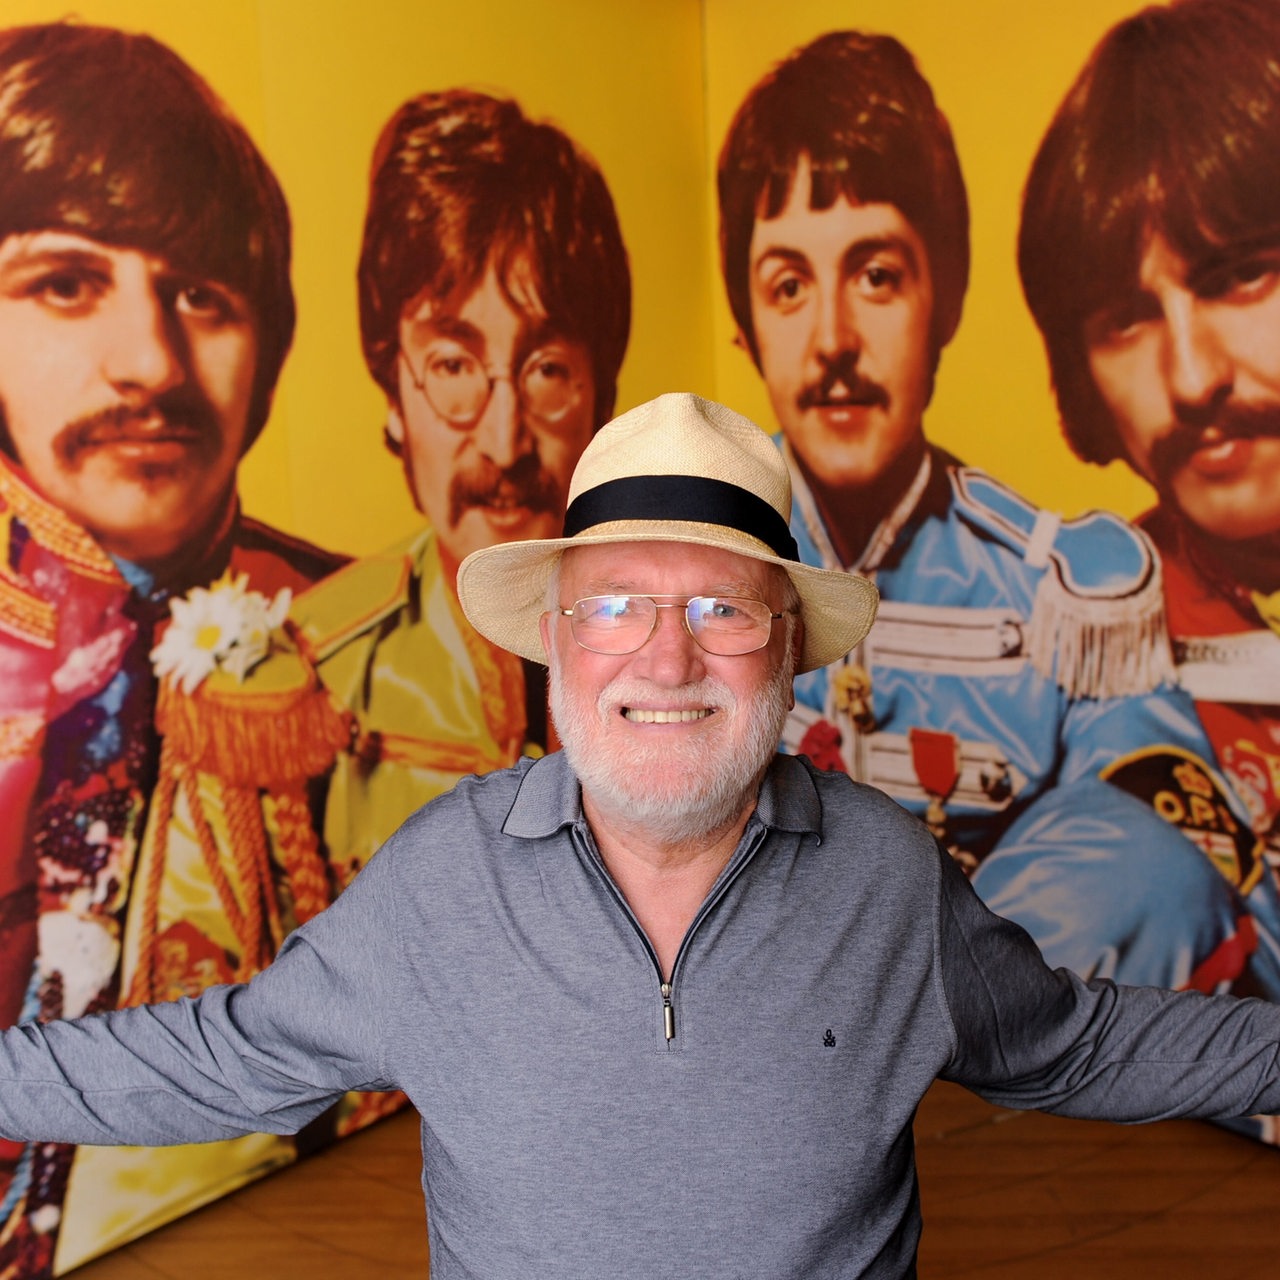 Horst Fascher, Manager und Direktor des Hamburger Star-Clubs, posiert vor einem Bild der Beatles